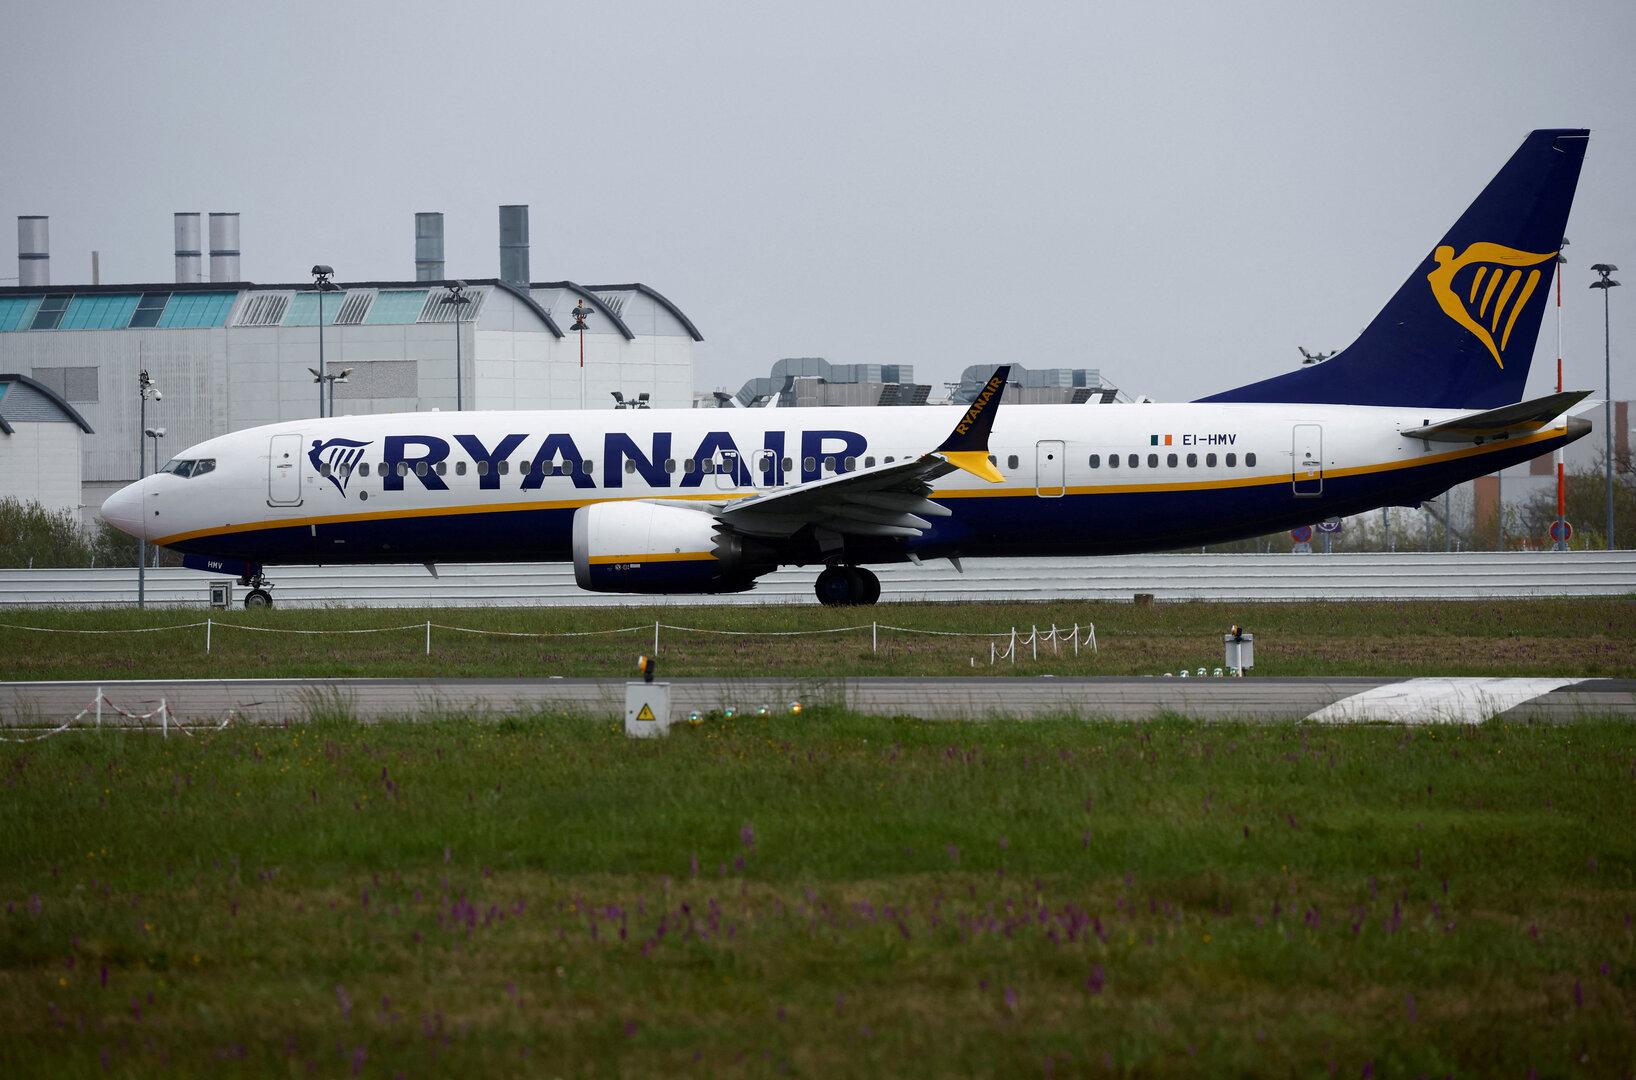 46 Prozent weniger Gewinn: Millionen-Einbußen bei Billig-Airline Ryanair